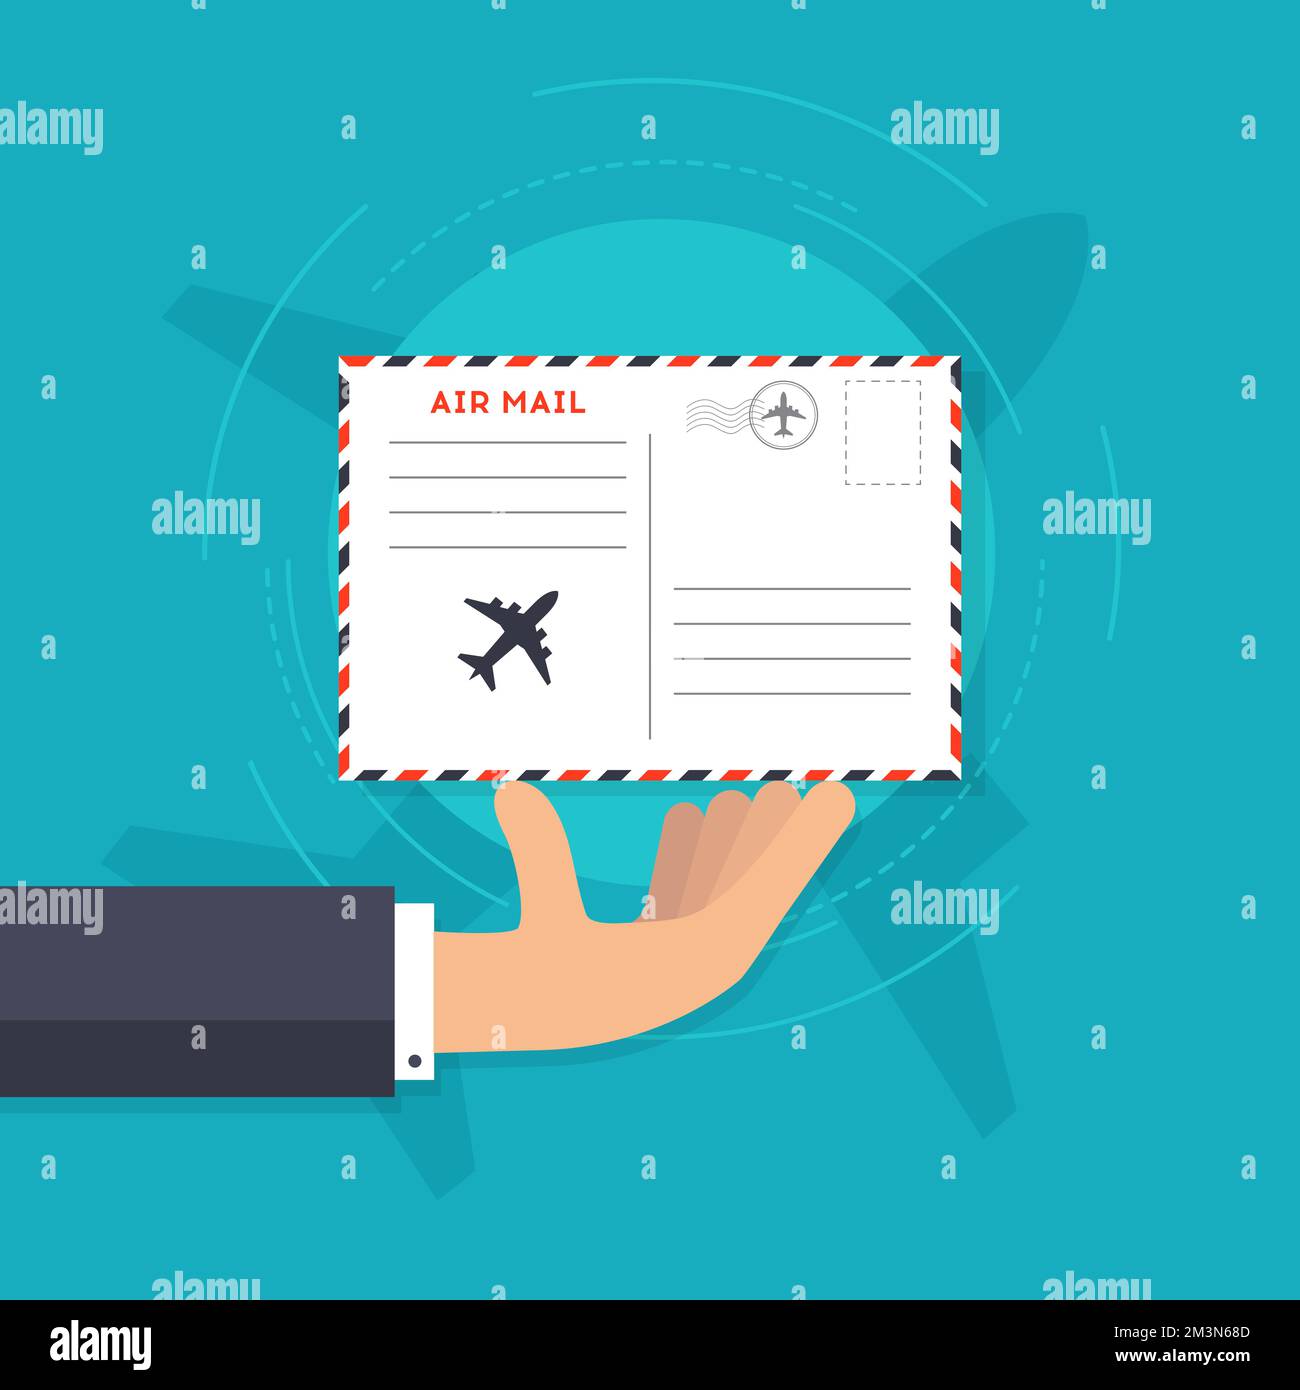 Illustrazione del vettore AirMail. Mano che tiene una busta con timbro postale. Icona di recapito della posta aerea. Illustrazione vettoriale Illustrazione Vettoriale